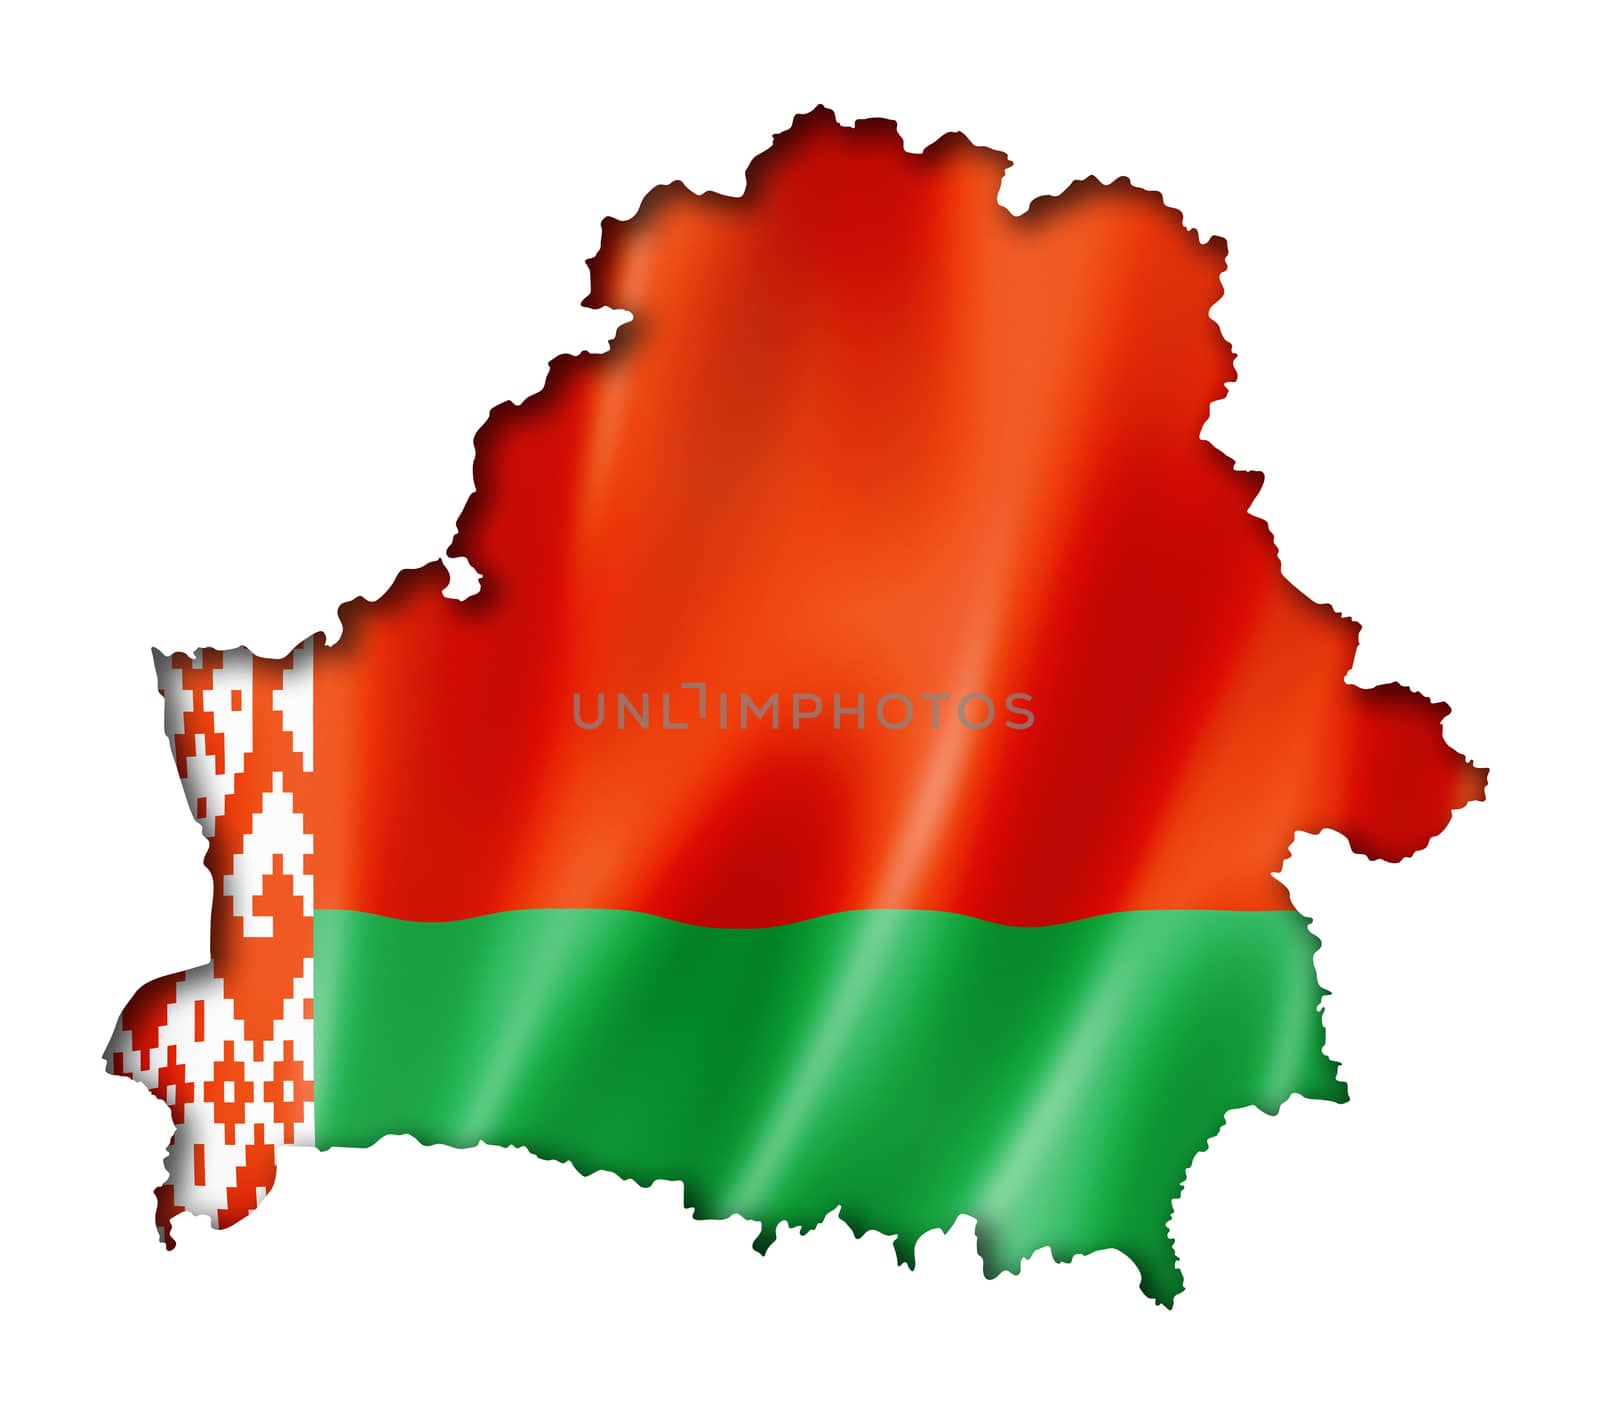 Belarus flag map by daboost